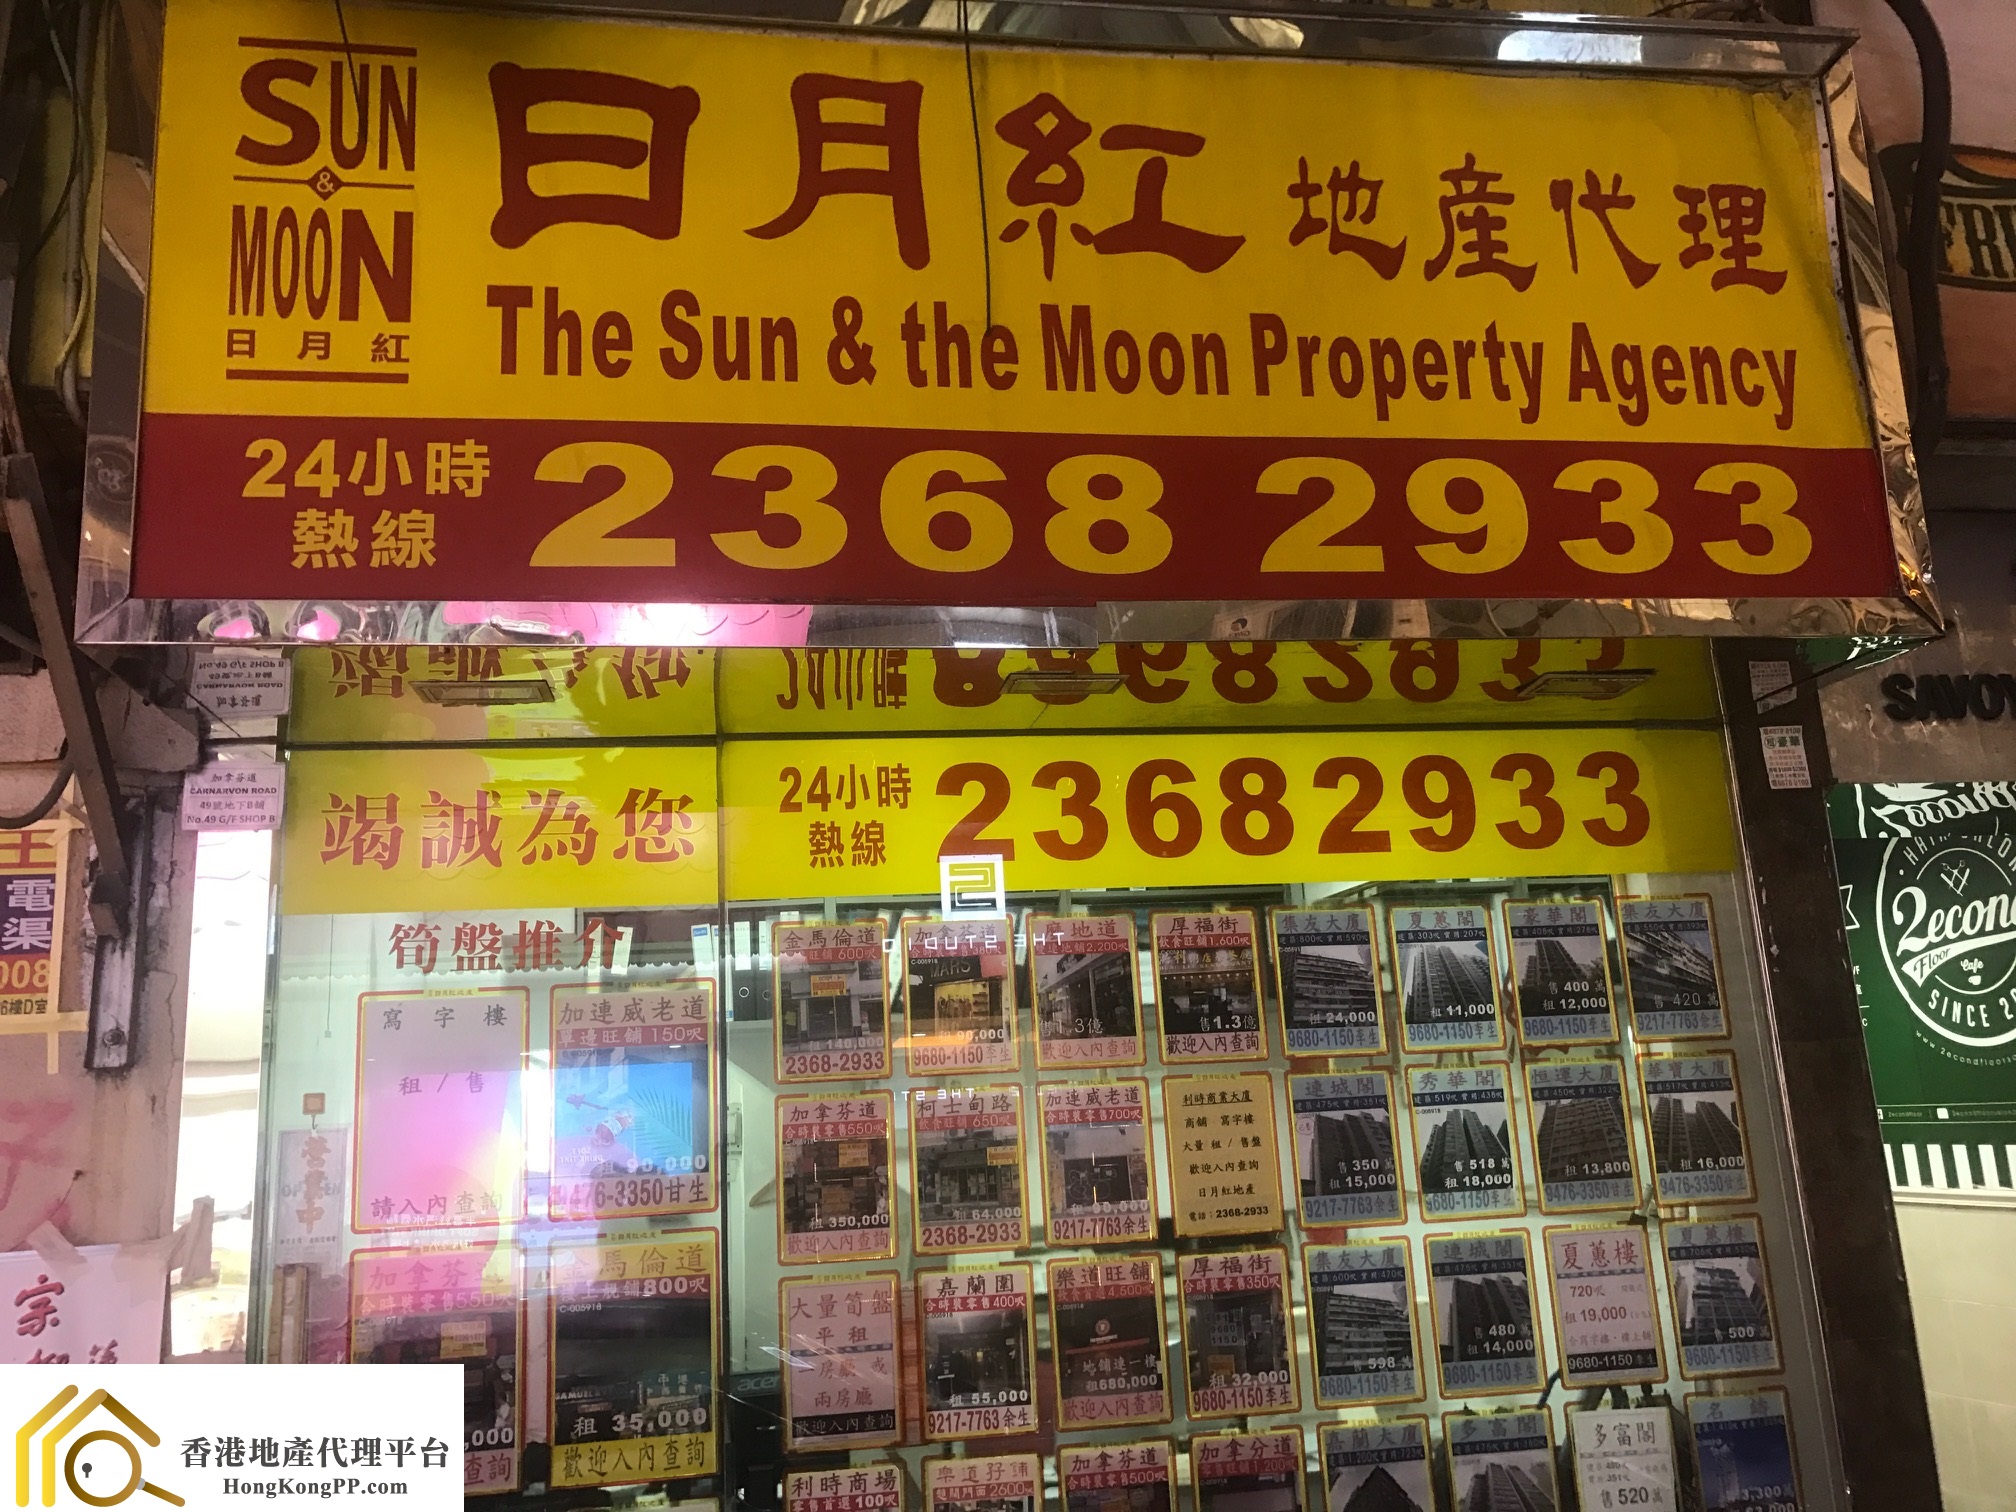 地產代理公司: 日月紅地產代理 The Sun & the Moon Property Agency